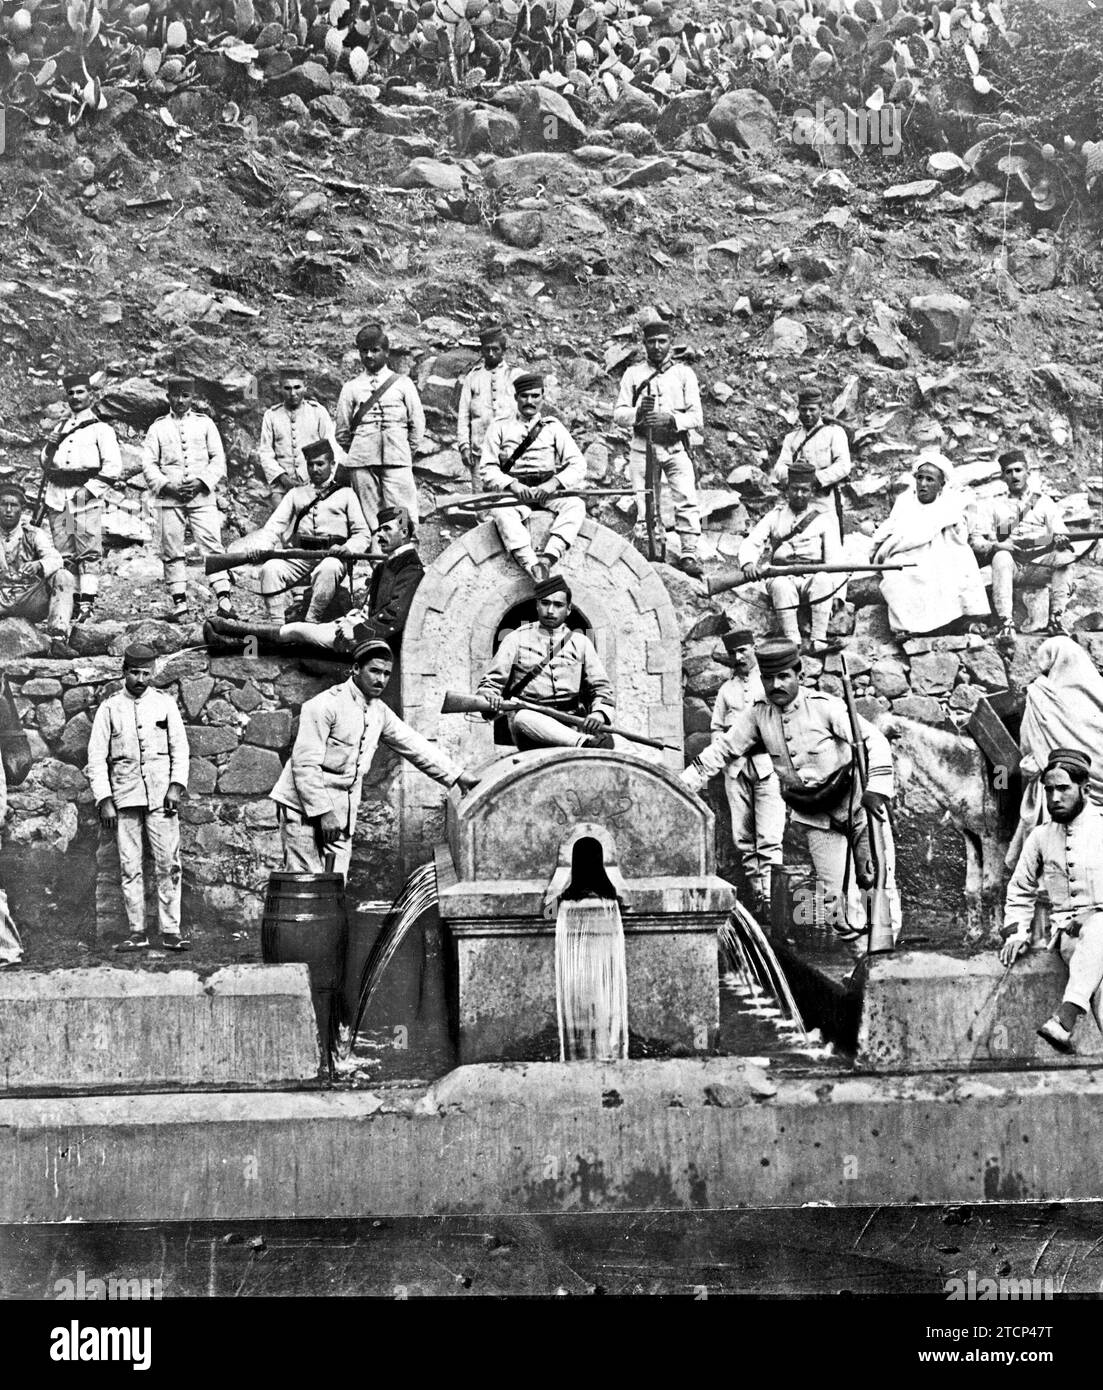 11/30/1912. L'azione della Spagna nel Rif. Fontana a 18 cucchiai, situata vicino alla sorgente di Ras Medua, recentemente inaugurata. Crediti: Album / Archivo ABC / Welkin Foto Stock